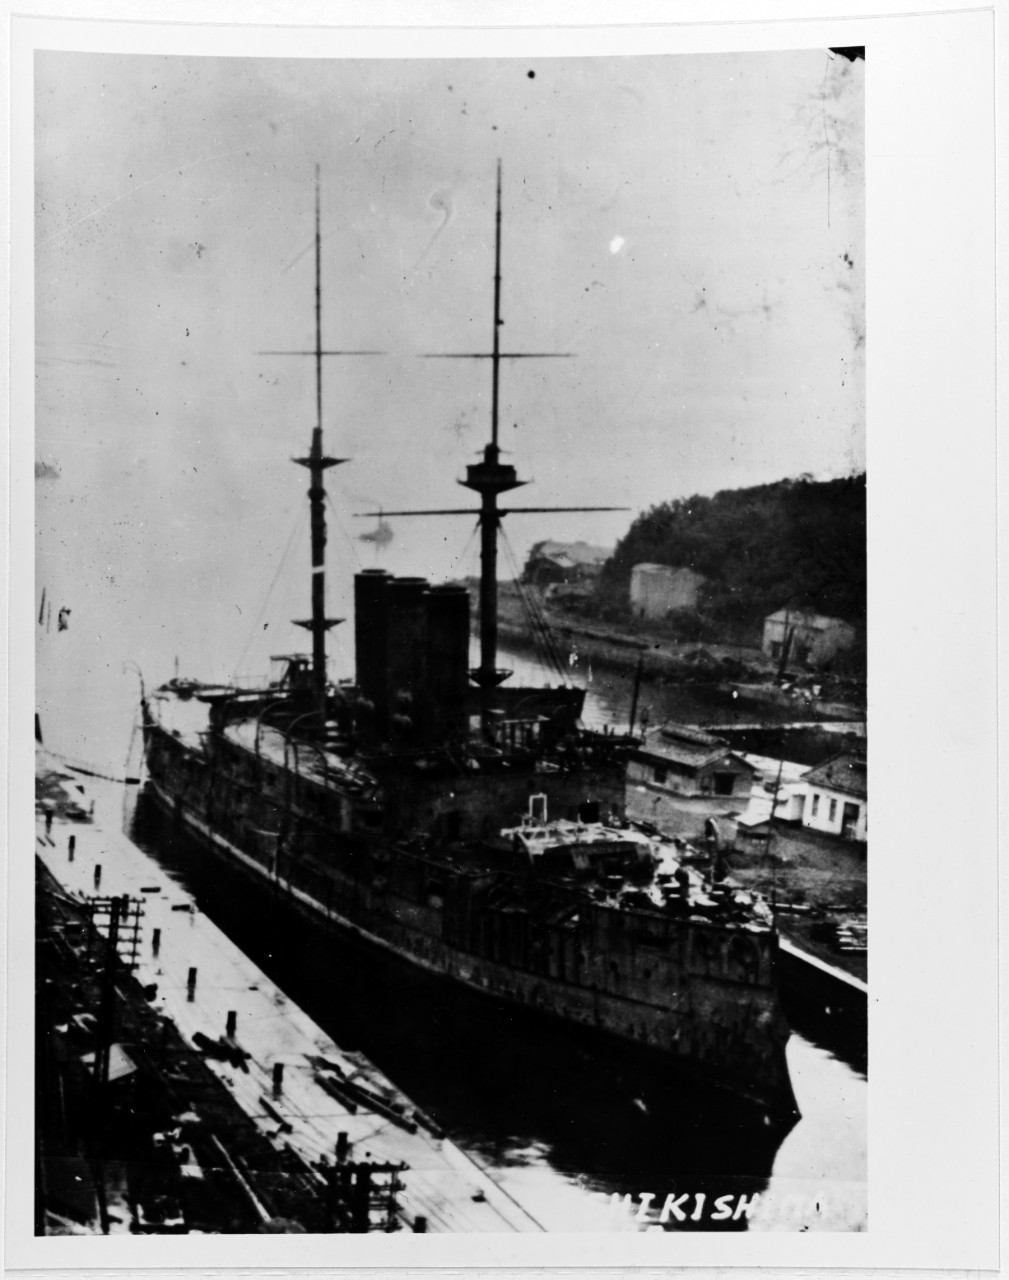 SHIKISHIMA (Japanese battleship, 1898-1948)